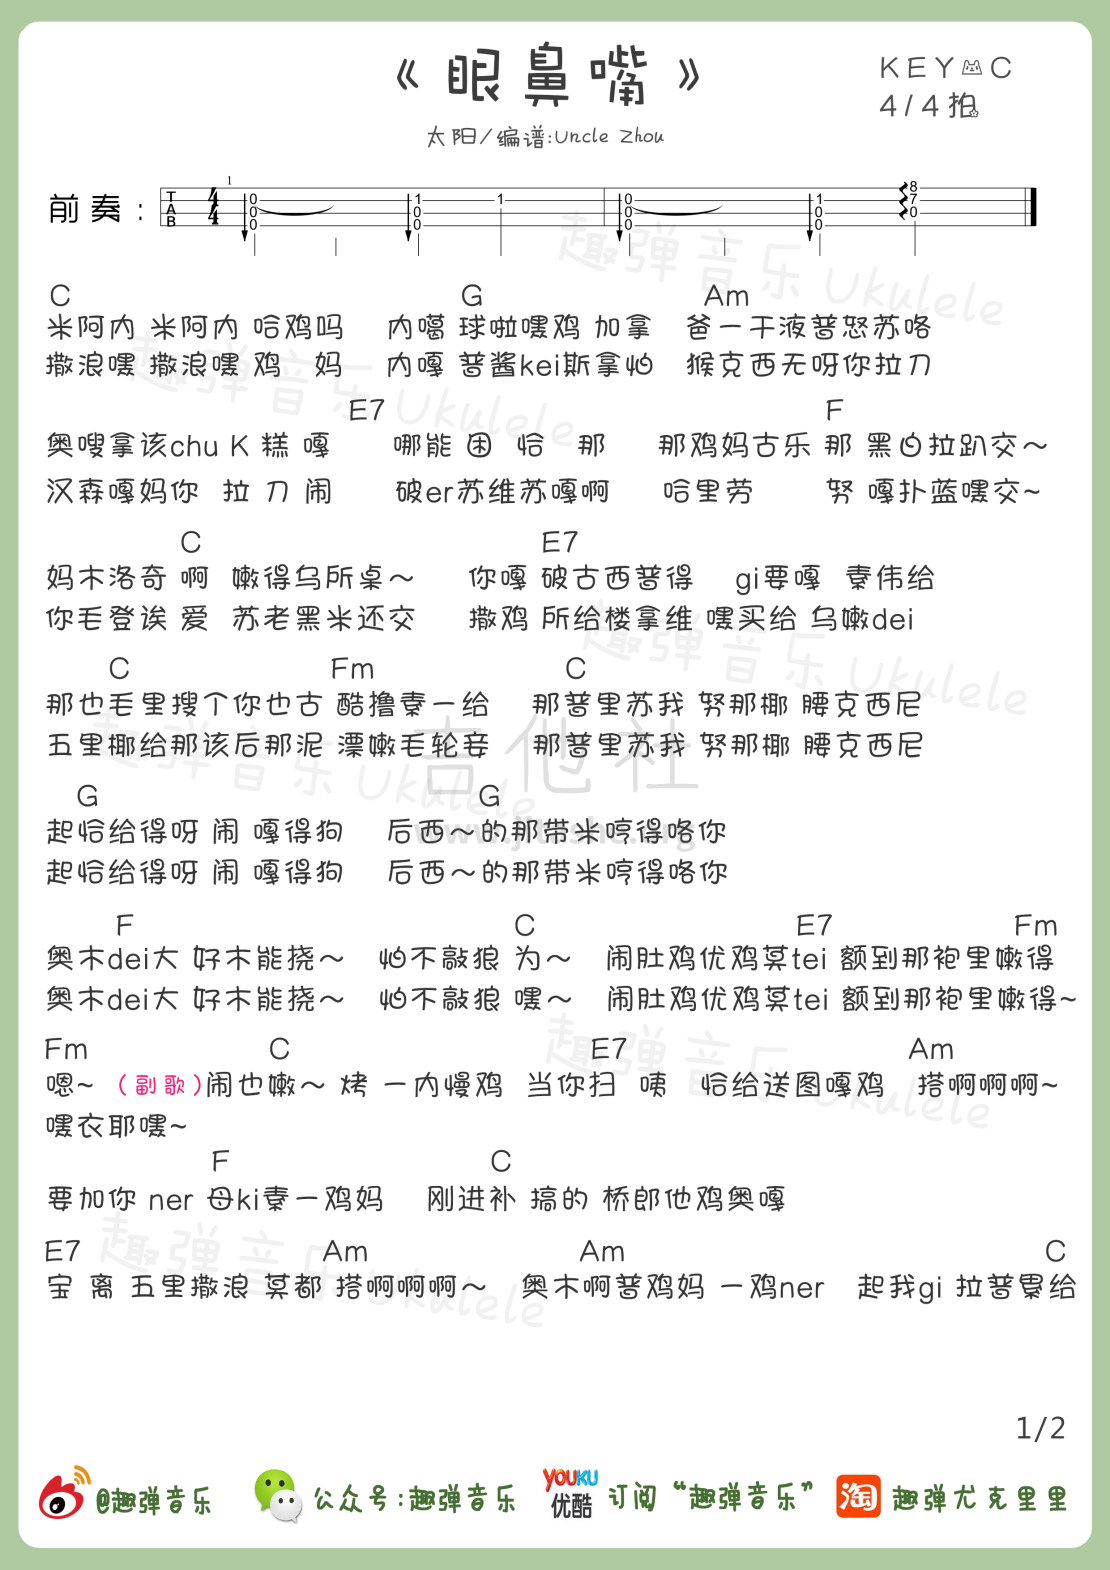 眼鼻嘴-太阳 Taeyang五线谱预览3-钢琴谱文件（五线谱、双手简谱、数字谱、Midi、PDF）免费下载